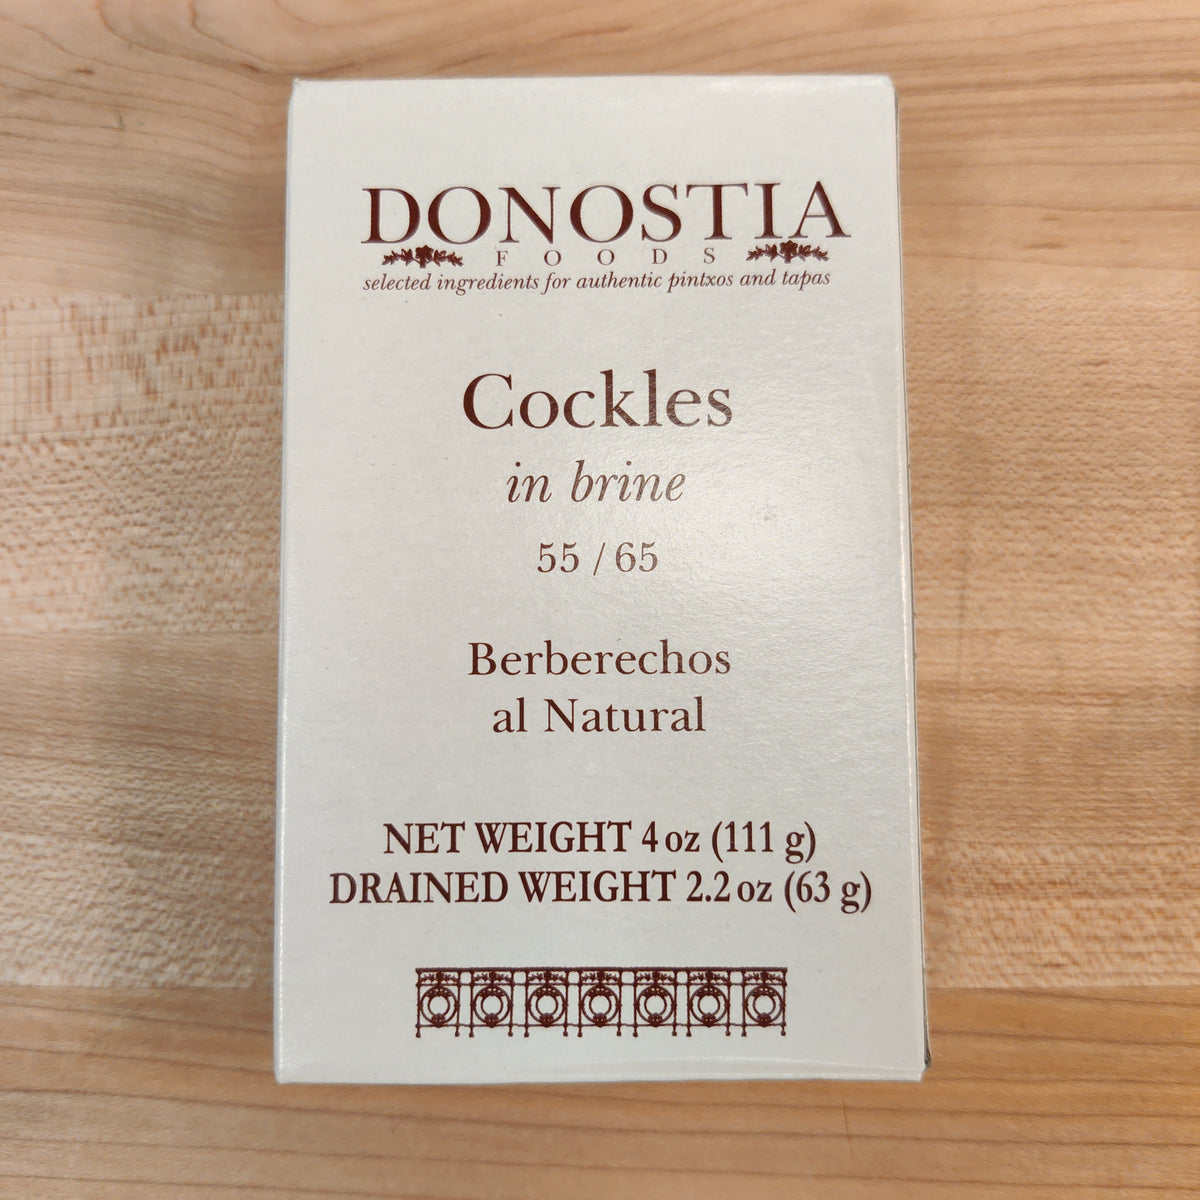 Donostia Foods Cockles in Brine (Berberechos al Natural) - 4oz